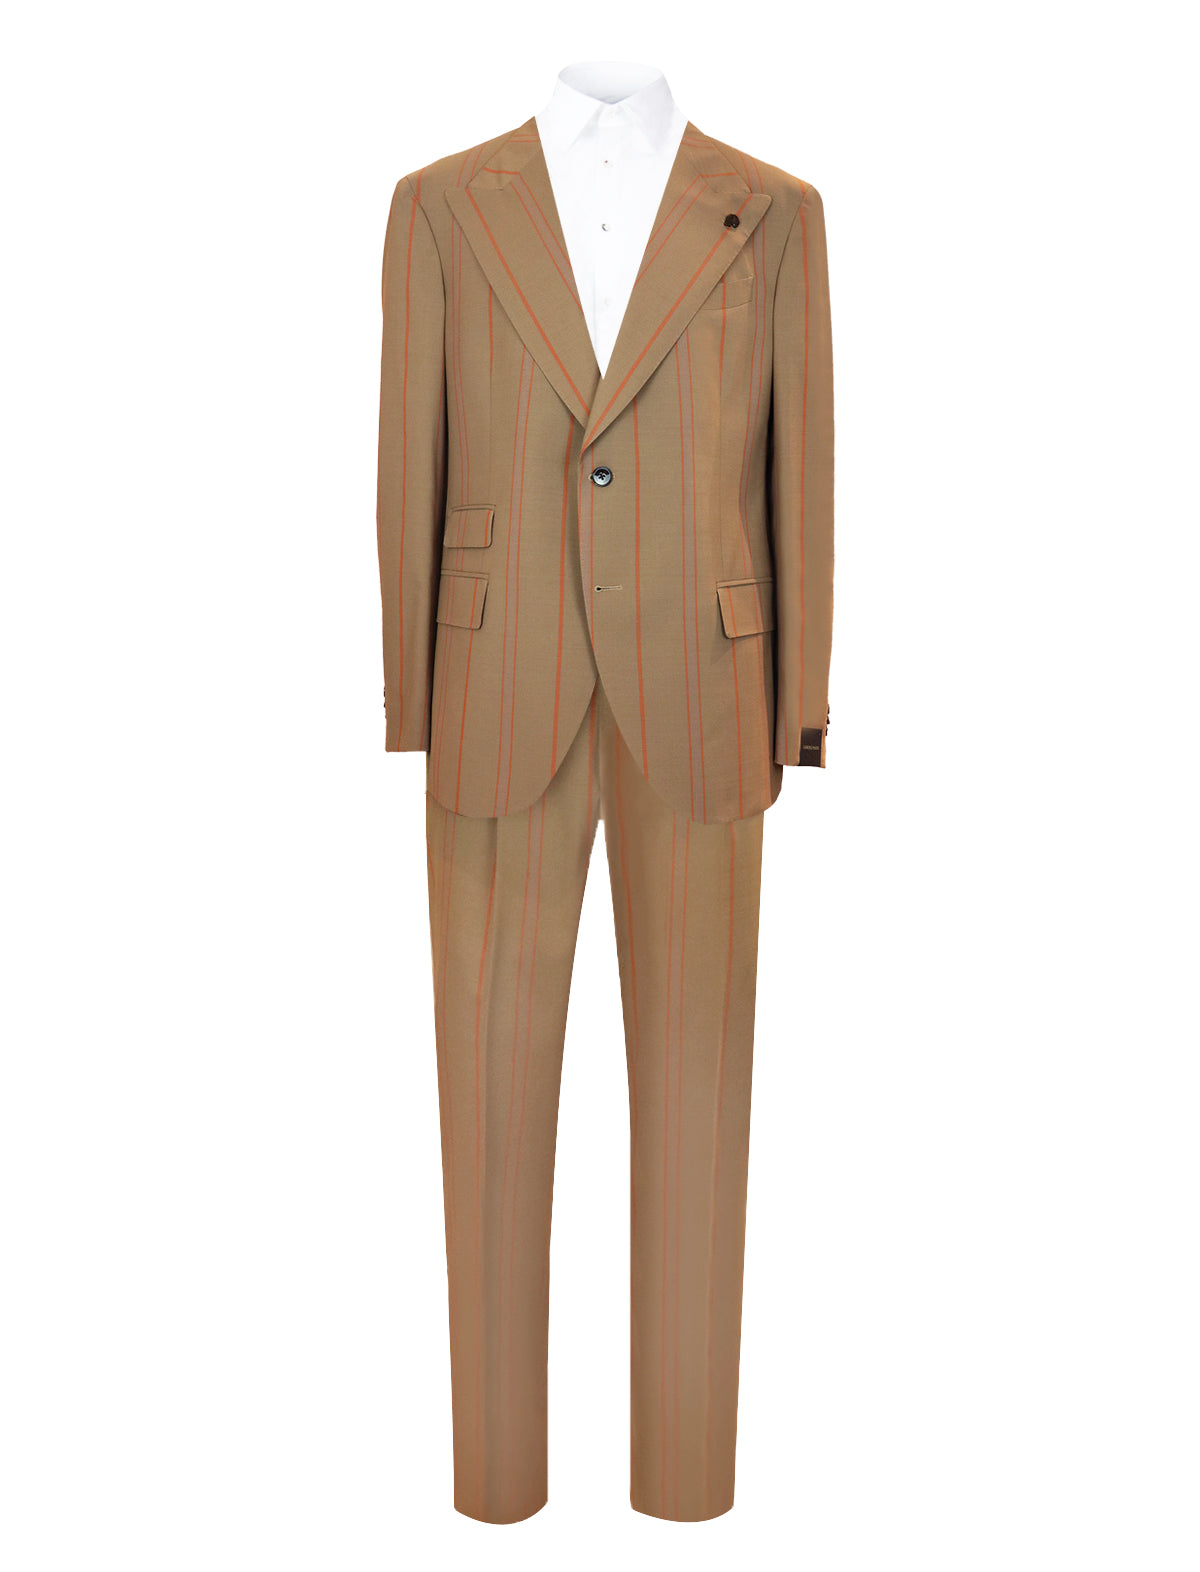 GABRIELE PASINI 2-Piece Milano Striped Suit in Marrone/ Multi